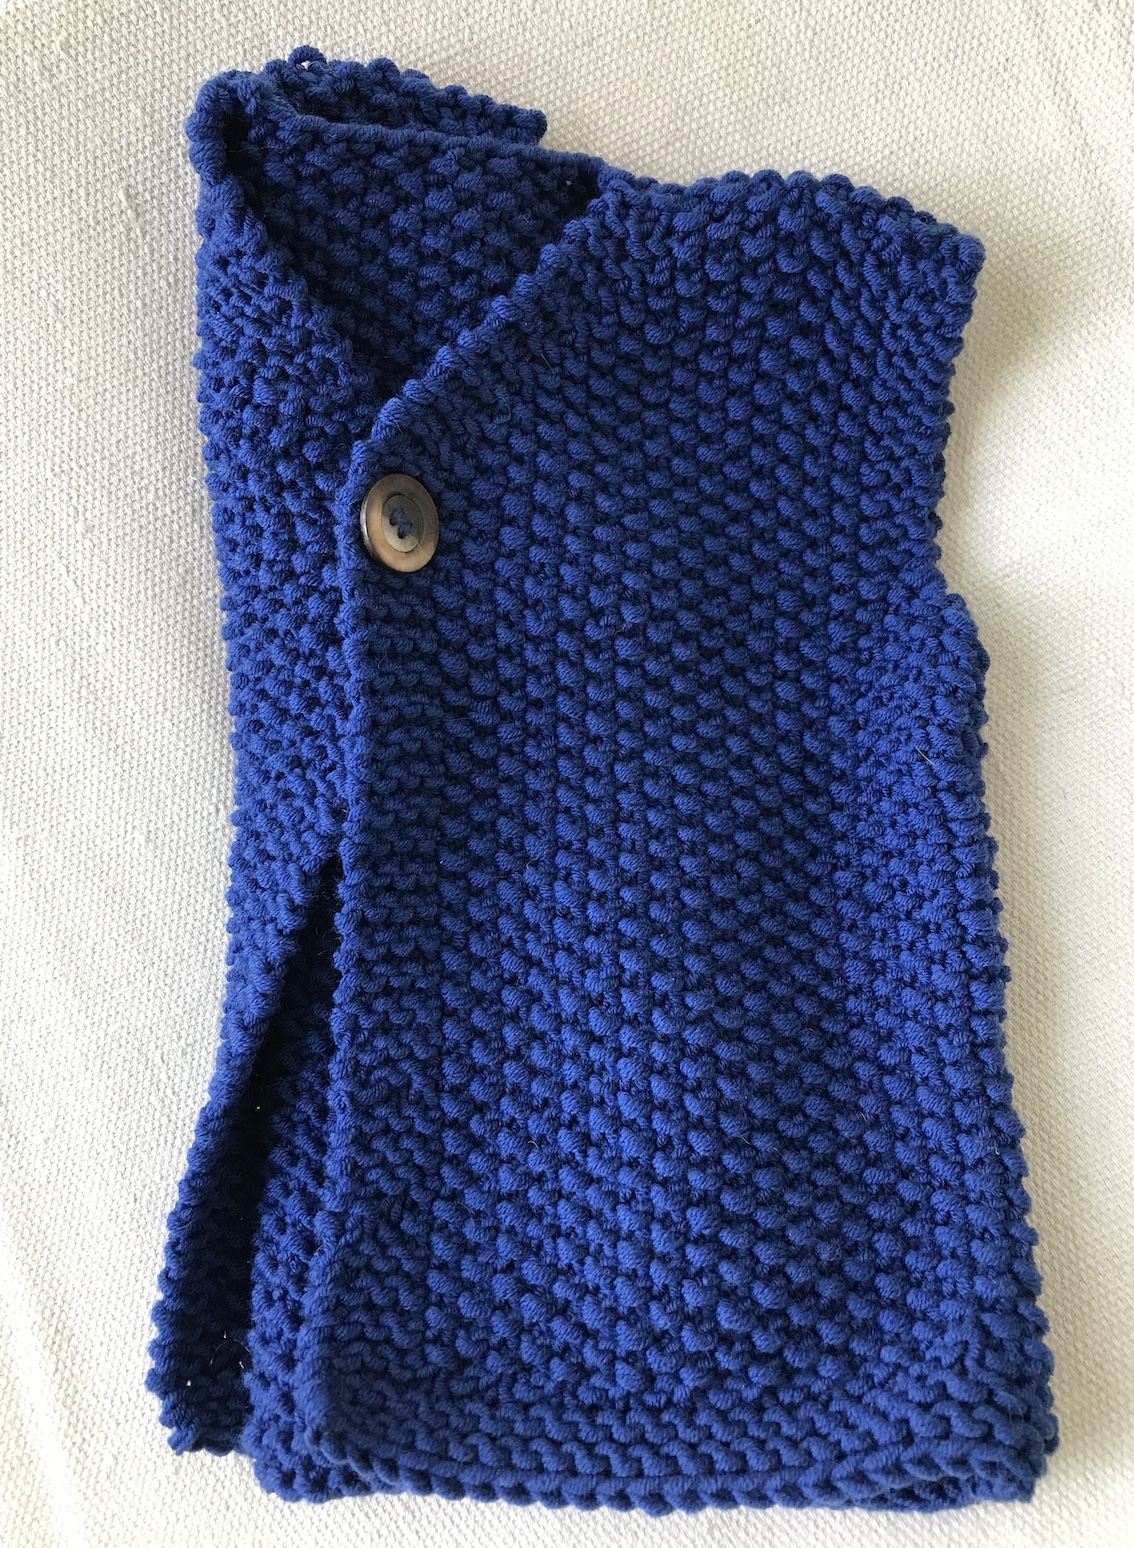 5pcs / lot Cachemire Soft Mink Velvet Laine Fil Pour Tricoter à la Main  Long Peul Laine Crochet Fils Pour Automne Hiver Luxe Haute Qualité